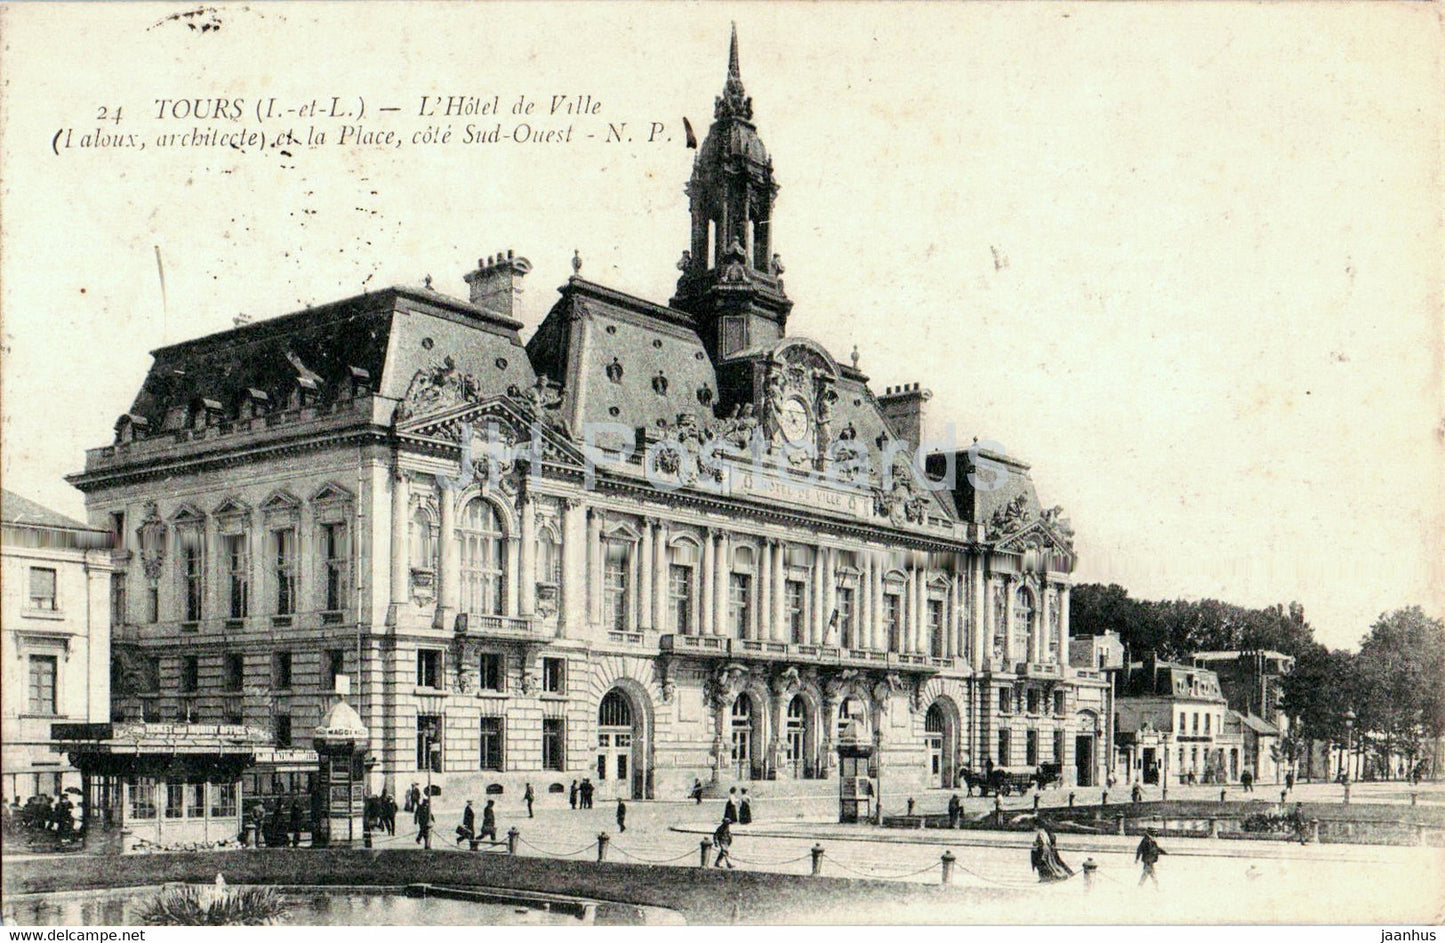 Tours - L'Hotel de Ville et la Place - Cote Sud Ouest - 24 - old postcard - 1916 - France - used - JH Postcards